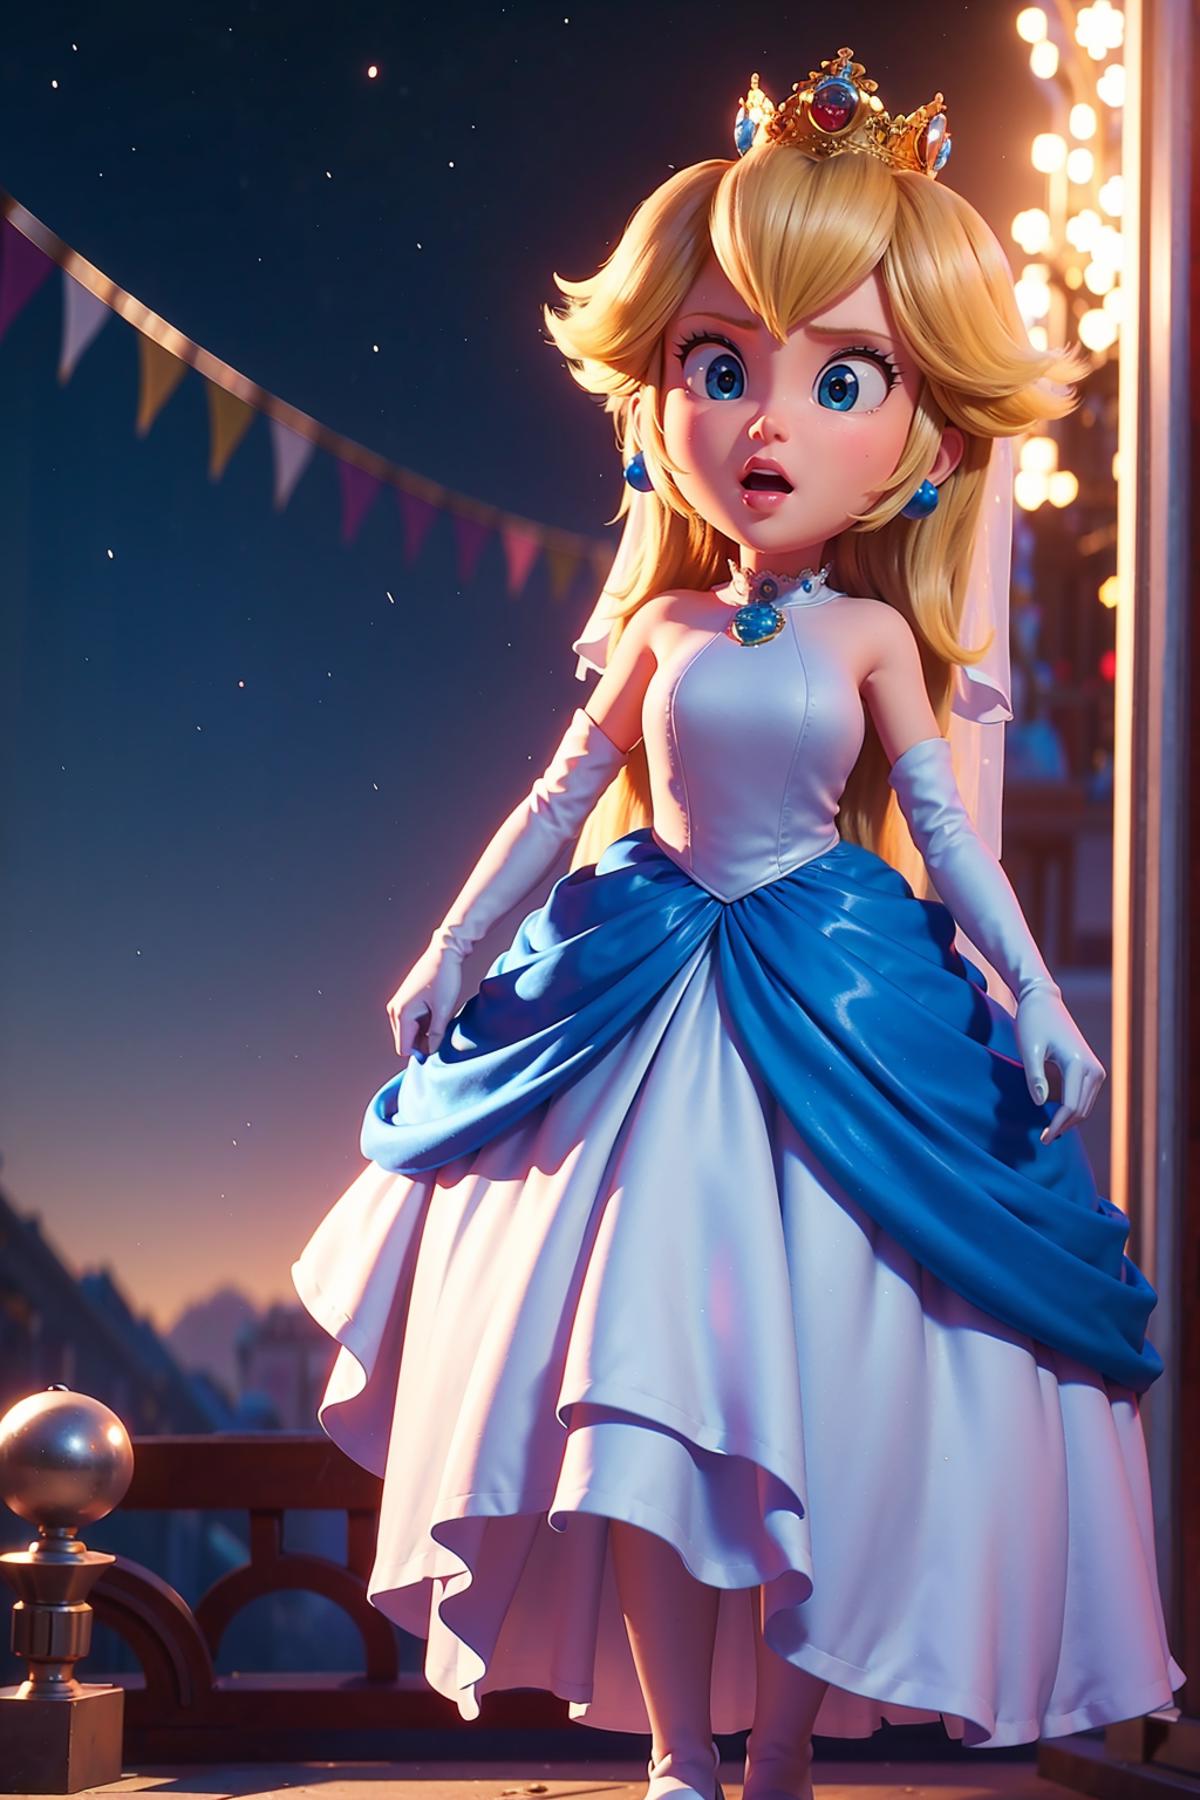 princess peach - The Super Mario Bros. Movie - movie like image by shadowrui